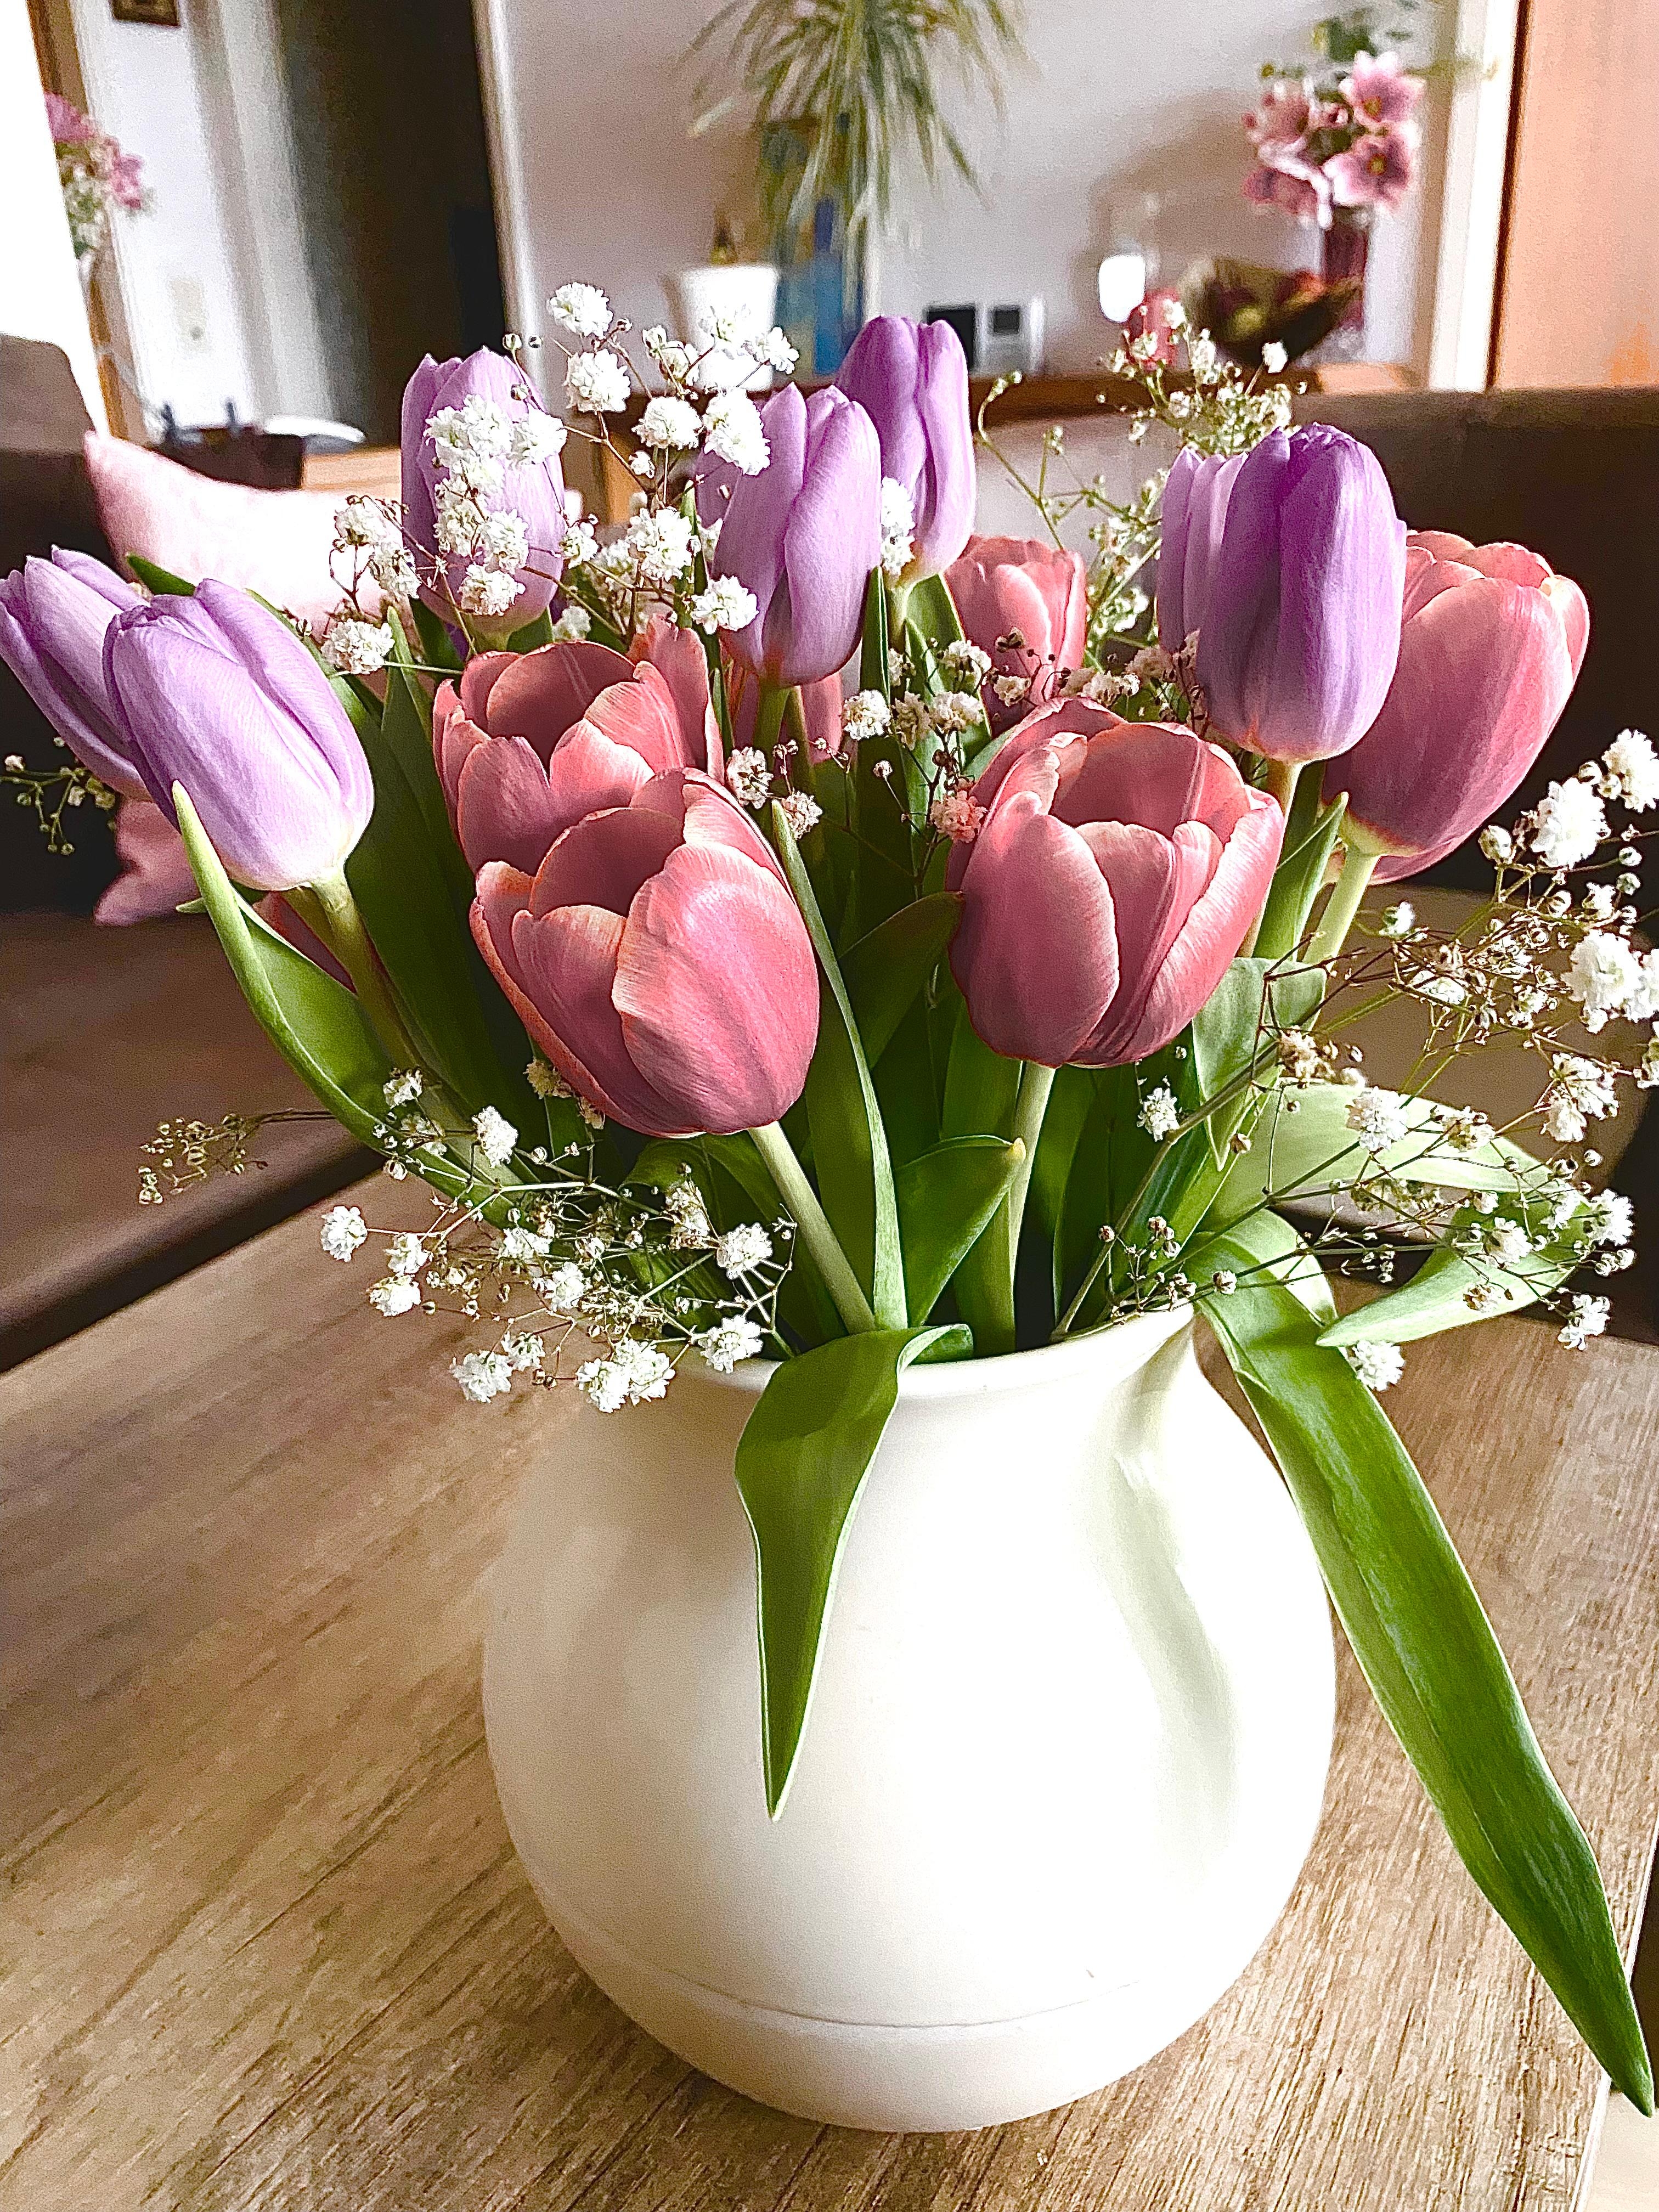 Wustet ihr, dass ein bunter Tulpenstrauss  Optimismus und Fröhlichkeit bedeutet?
#freundin #besuch #tulpen #geschenk #wohnzimmer